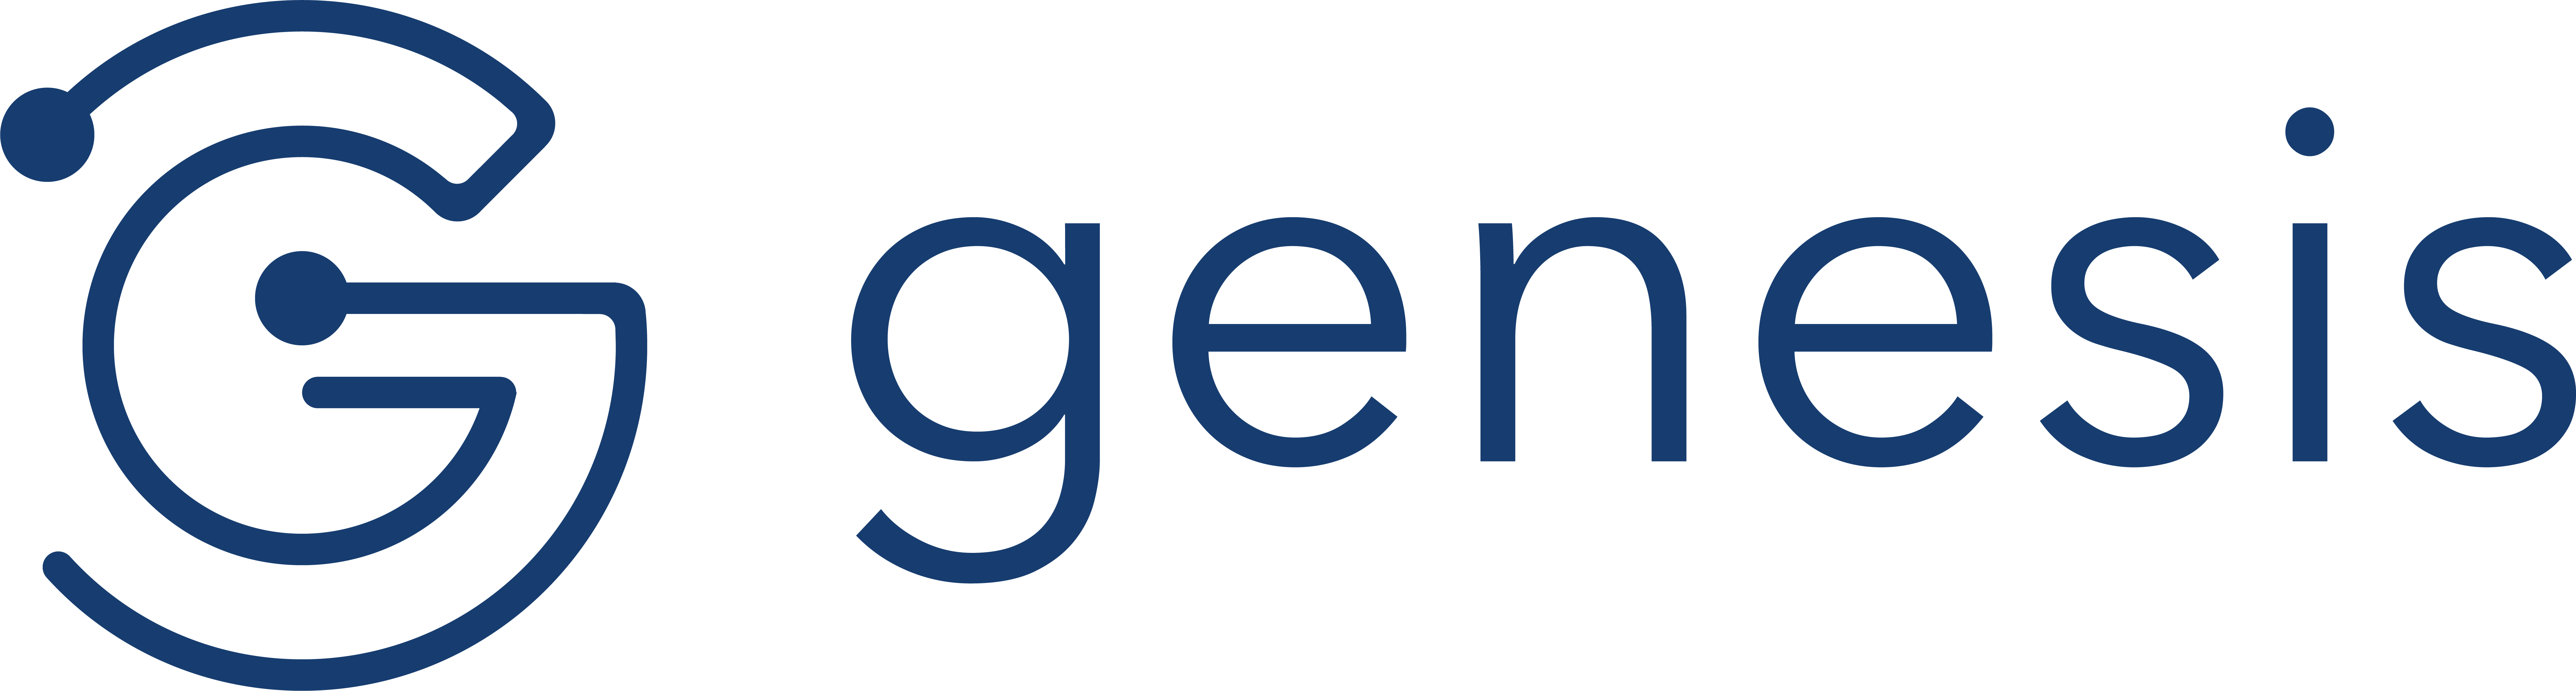 Global Technology Logo - Genesis - Genesis Global